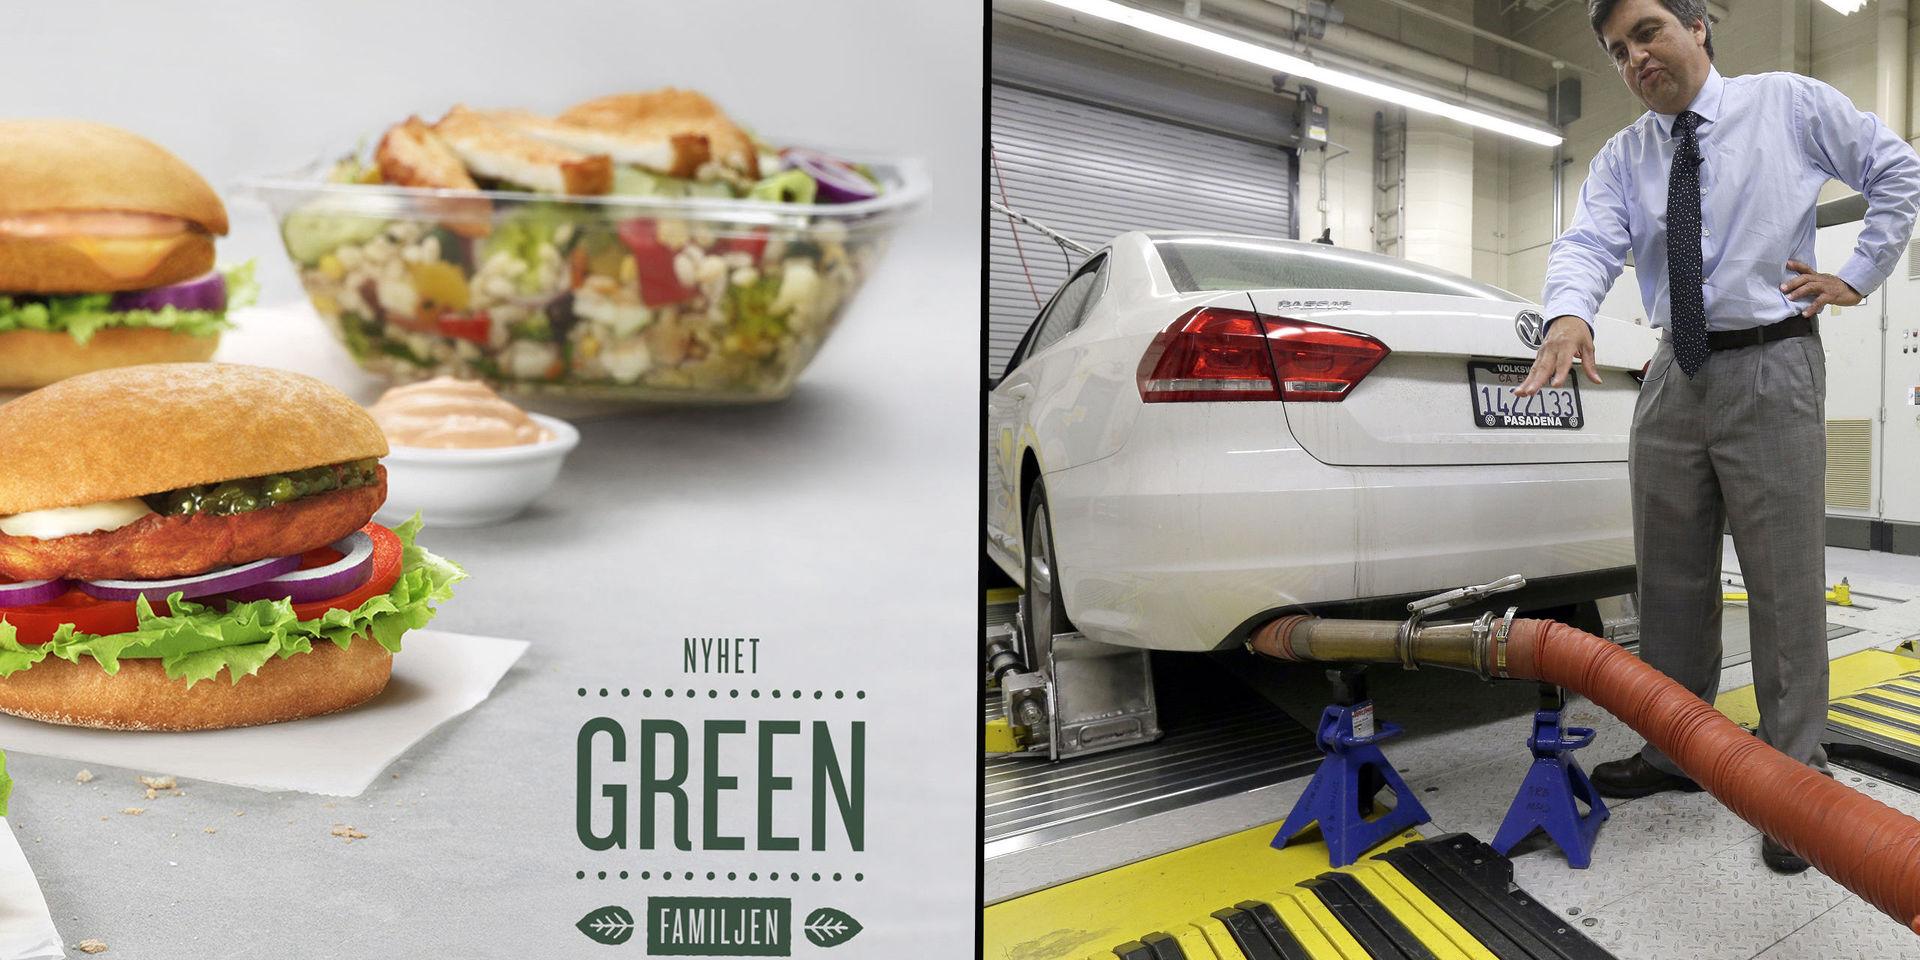 Klimat. Max har hyllats för grön satsning medans VW fick ett bakslag när det visades att deras utsläppsvärden inte stämde. John Swanton (bilden) representerar luftmiljömyndigheten i Kalifornien där tester gjordes.